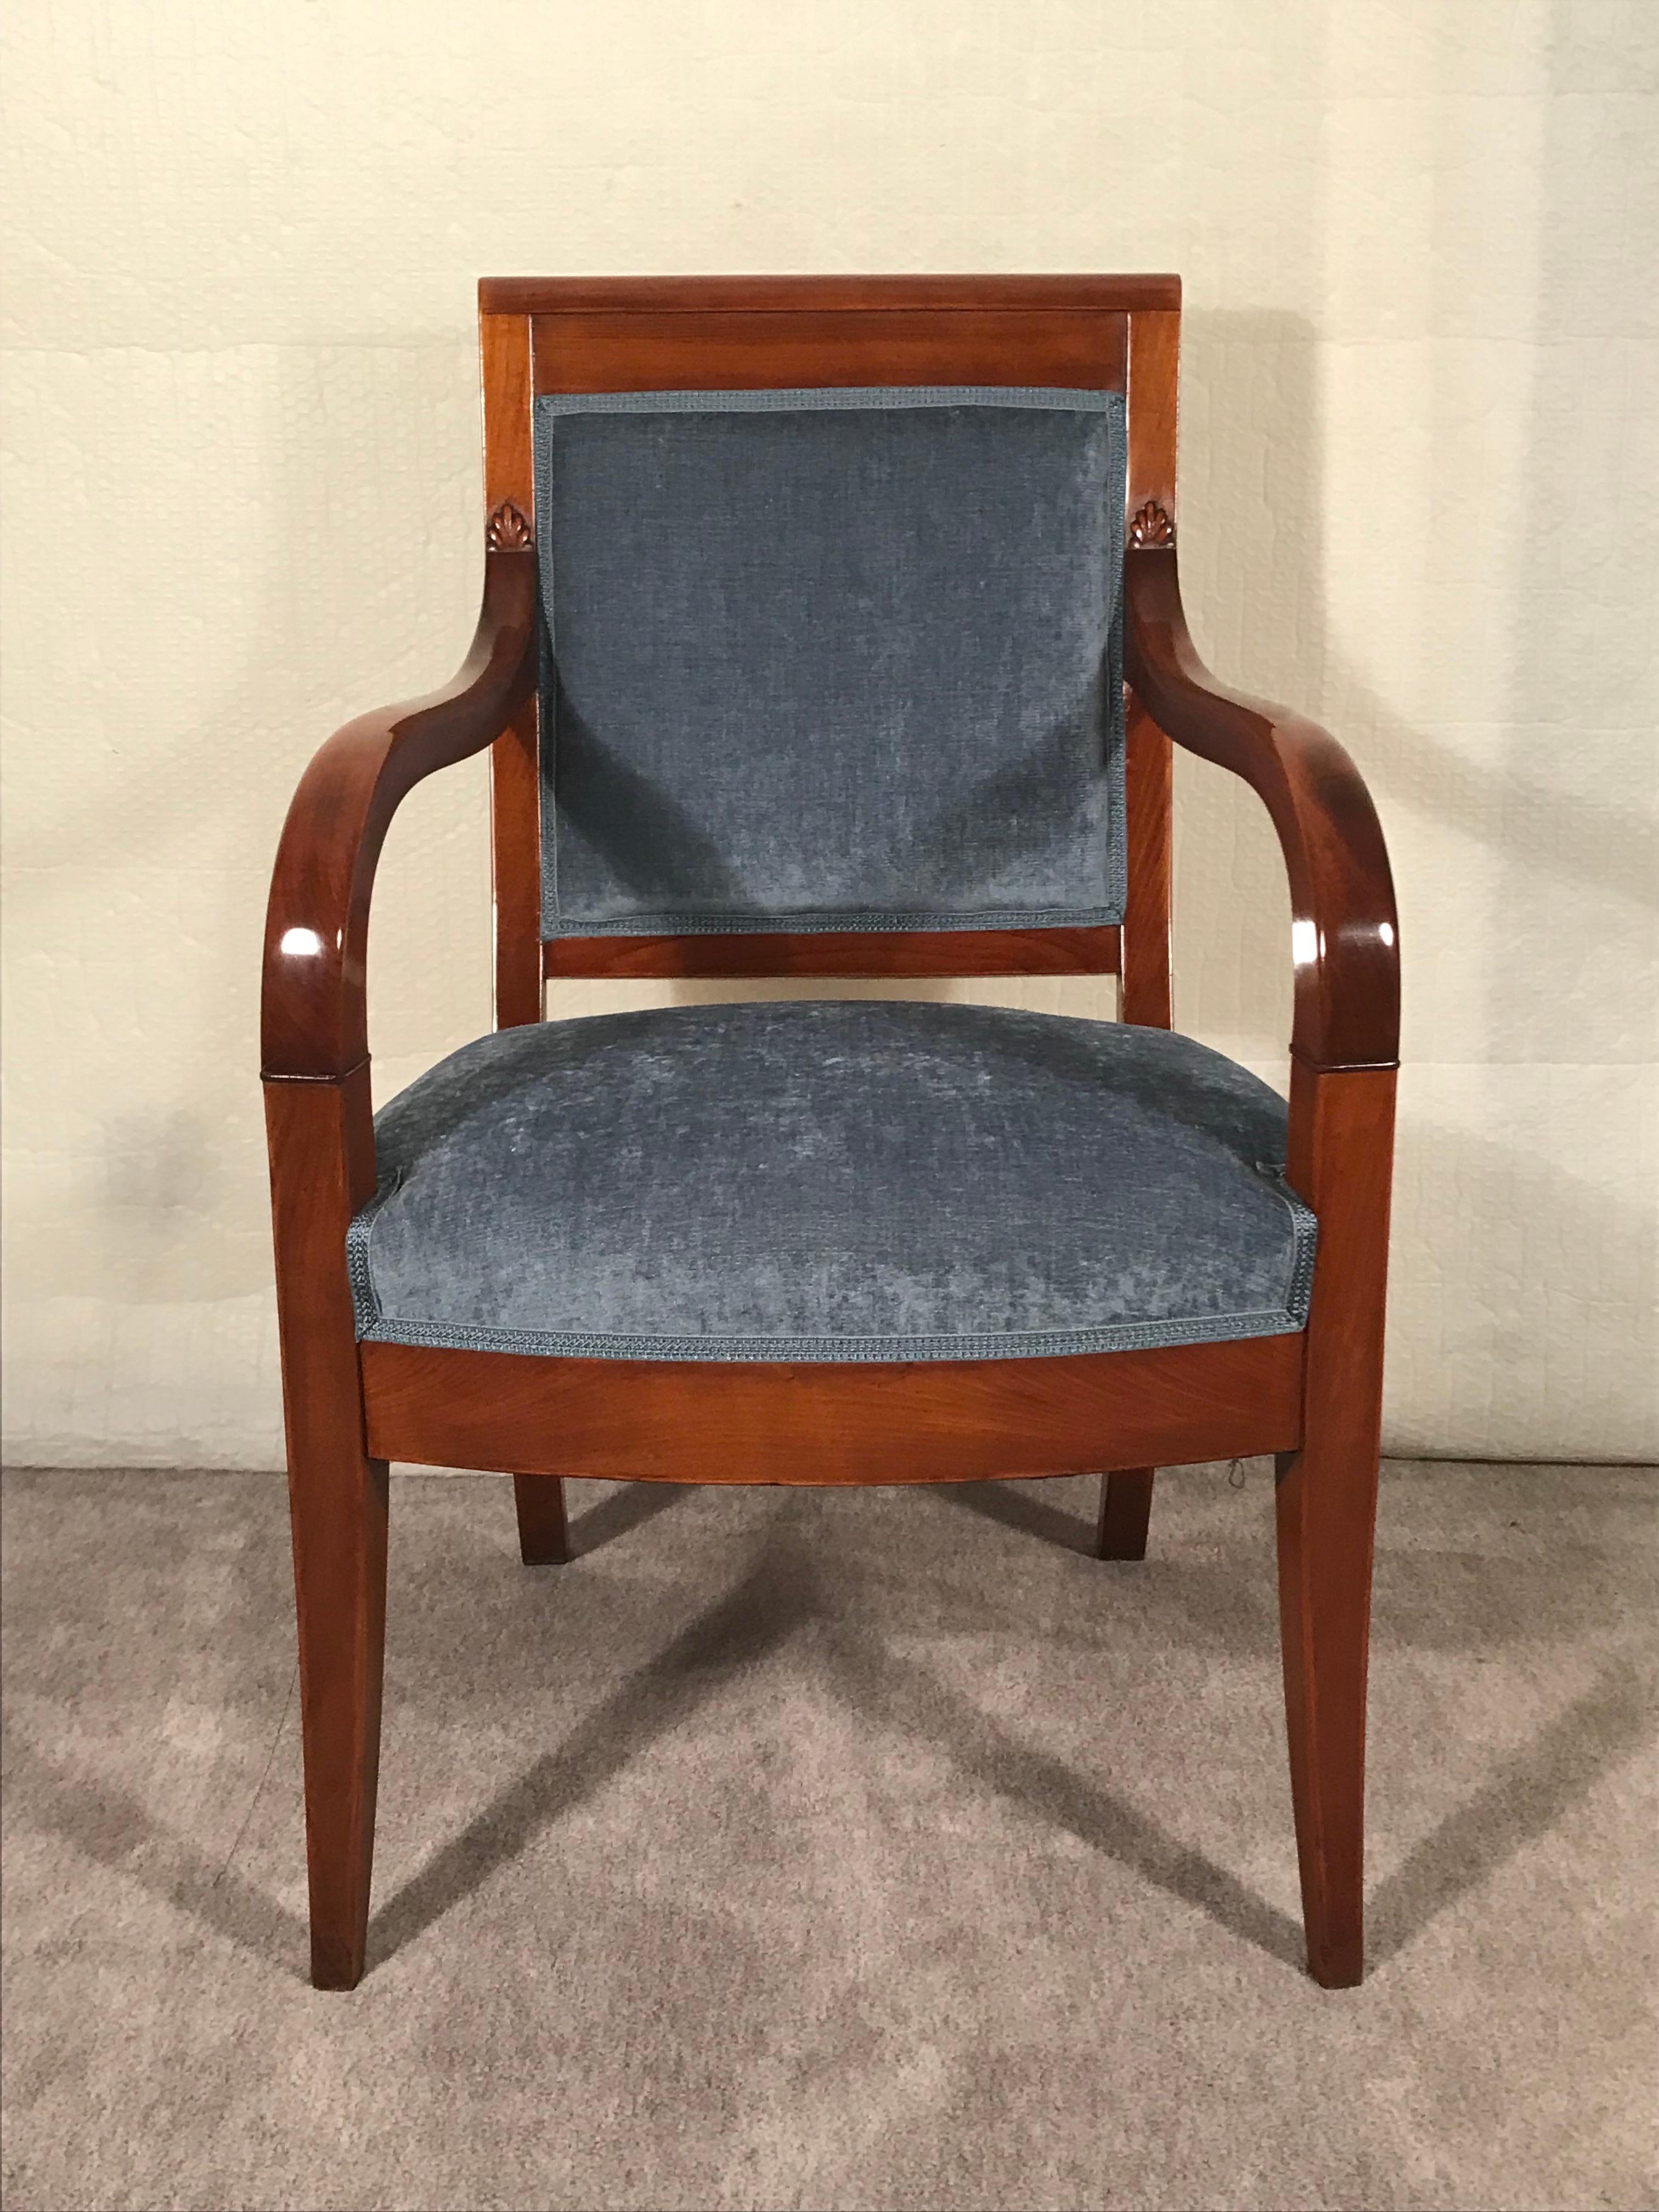 Entdecken Sie eine atemberaubende  Biedermeier-Sessel, der zeitlose Eleganz ausstrahlt und um 1820 aus Süddeutschland stammt. Dieser exquisite Sessel besticht durch sein schönes Kirschbaumfurnier, das ihm einen besonderen Charme verleiht.  Der mit